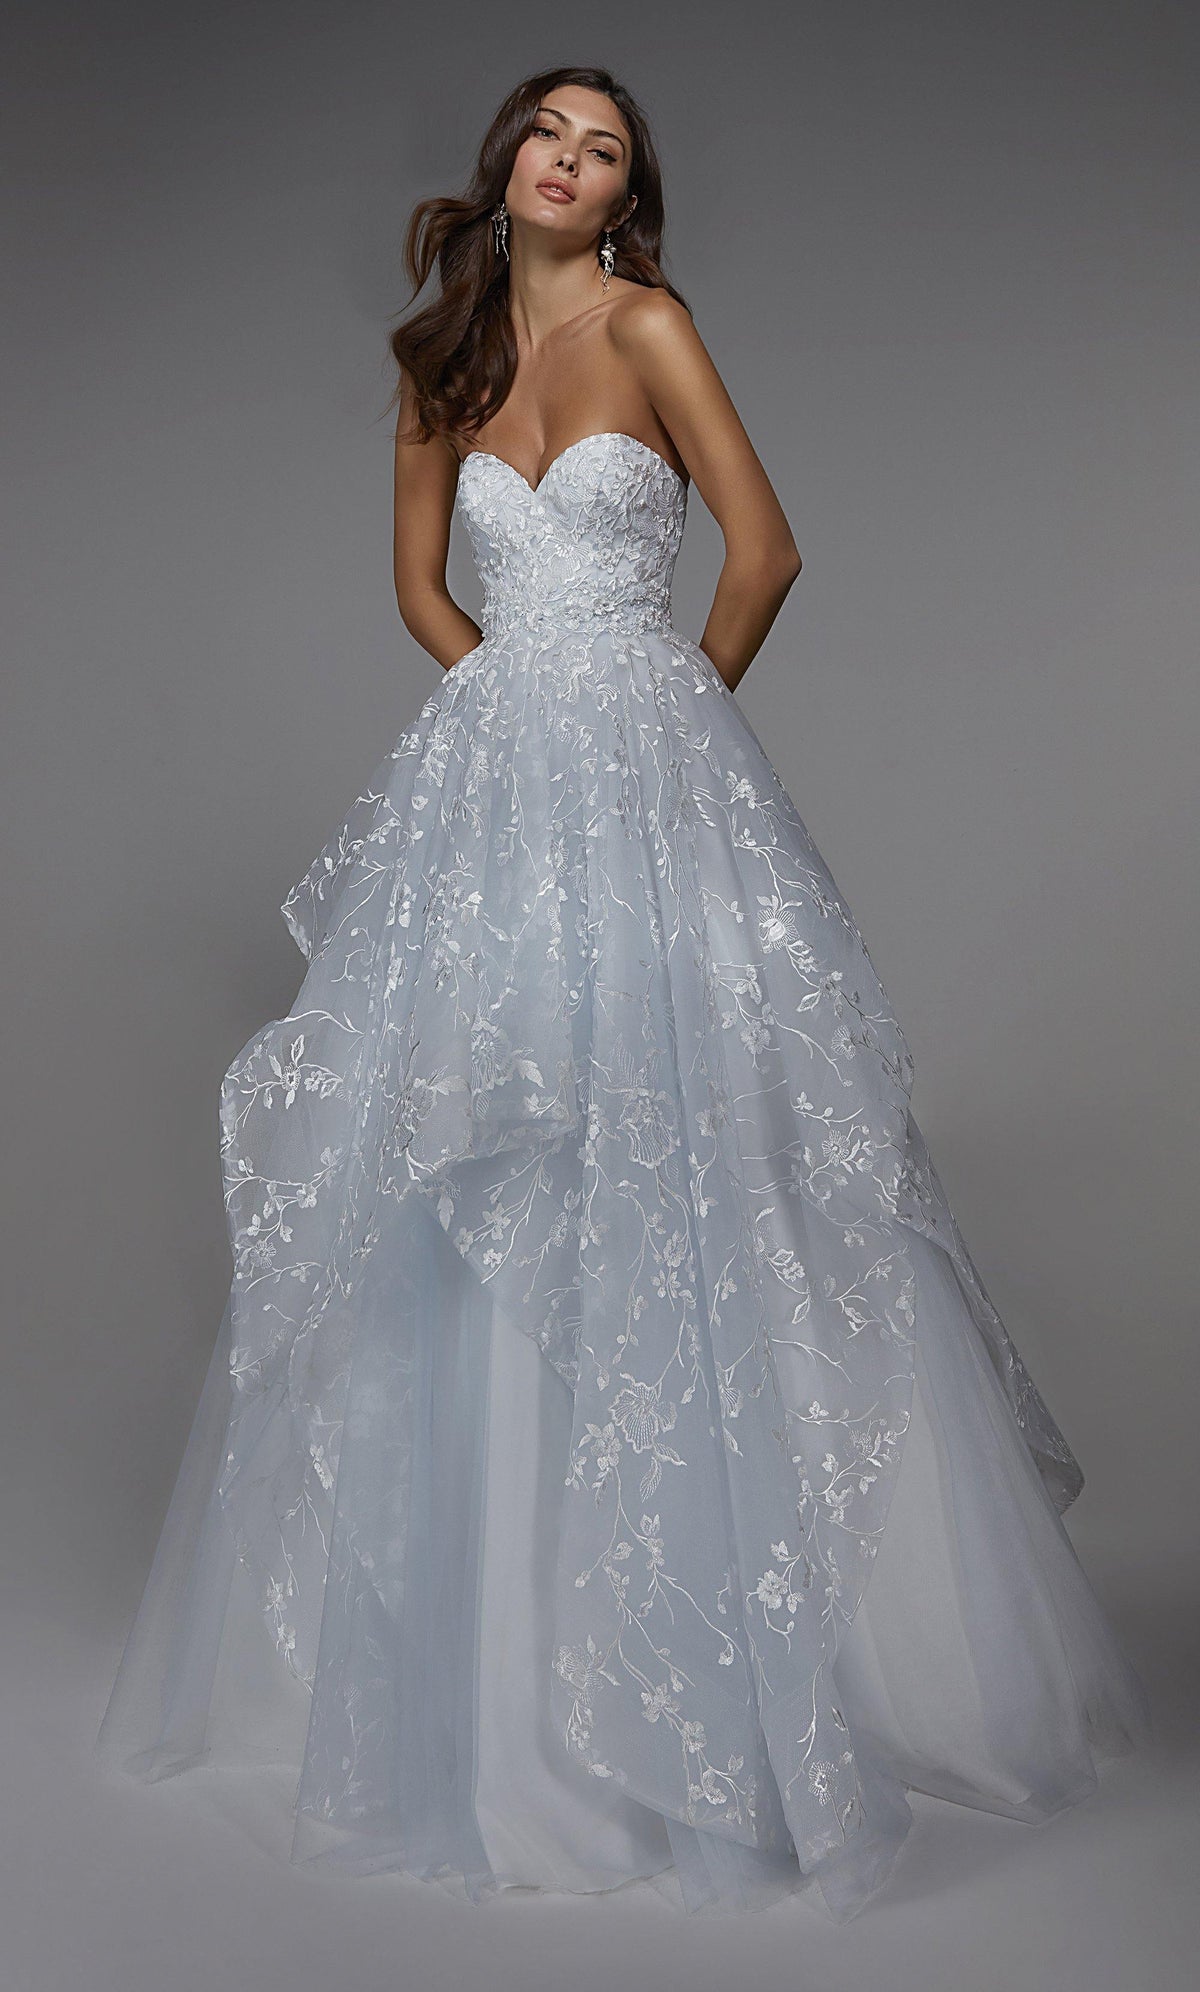 Formal Dress: 7041. Long Wedding Dress, Strapless, Ball Gown Alyce Paris